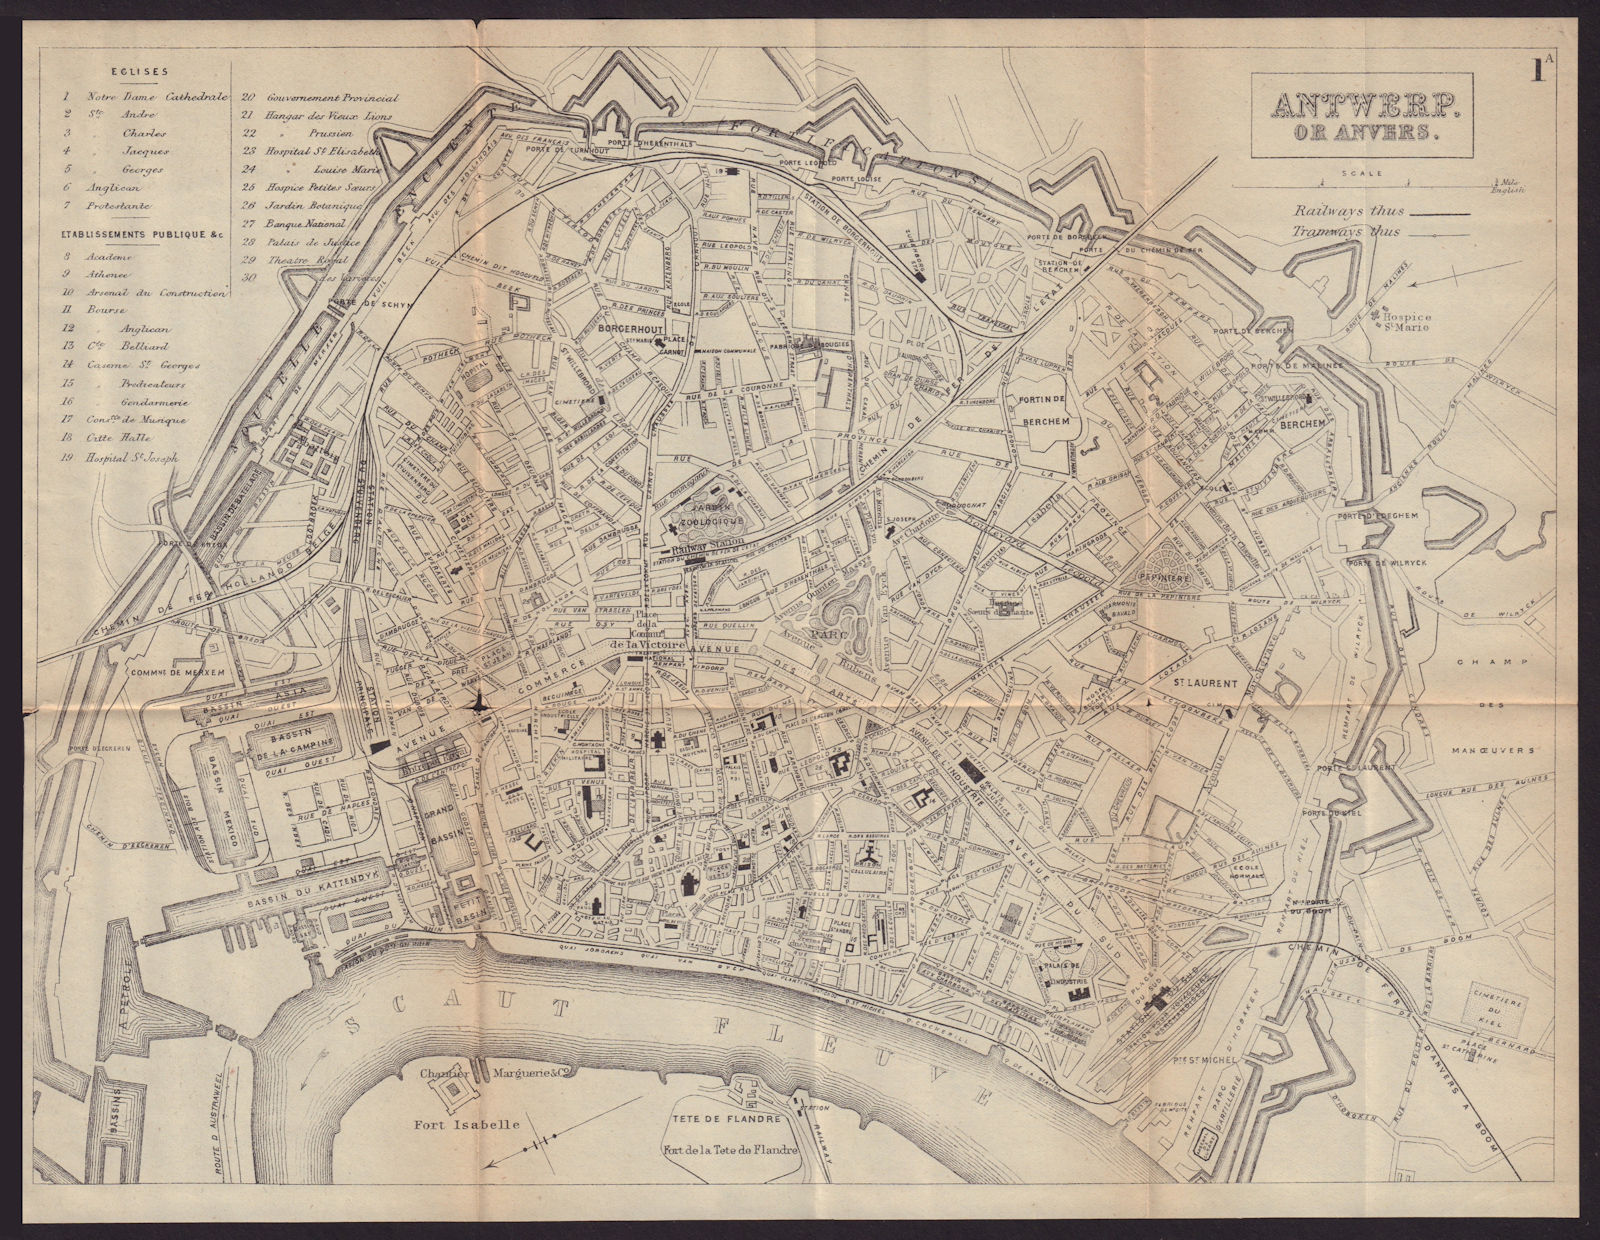 ANTWERP ANVERS ANTWERPEN antique town plan city map. Belgium. BRADSHAW 1893